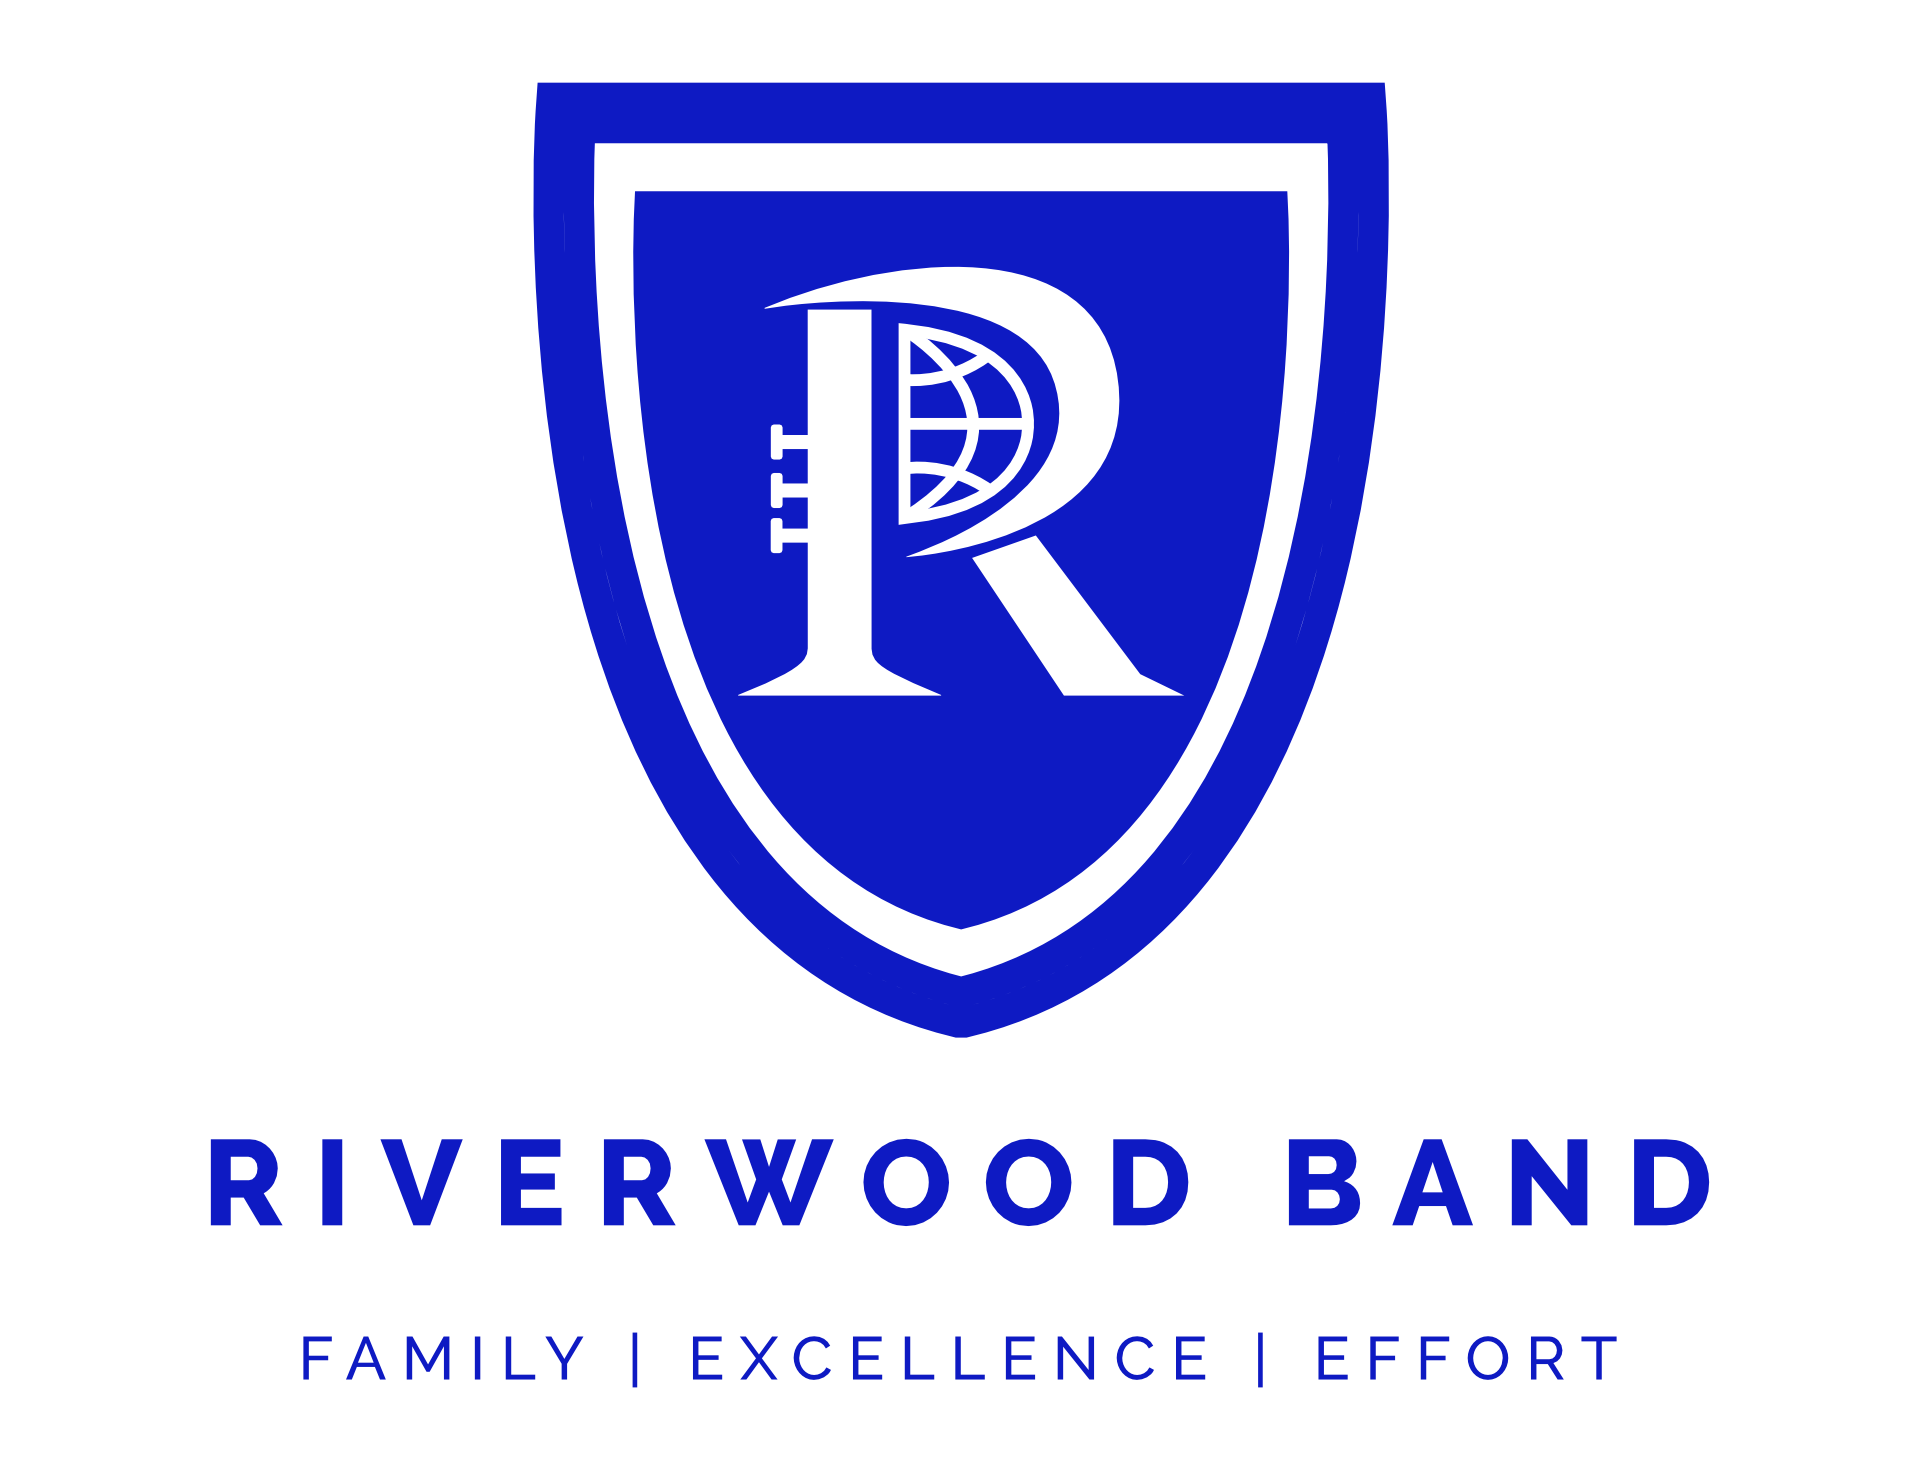 Riverwood Band